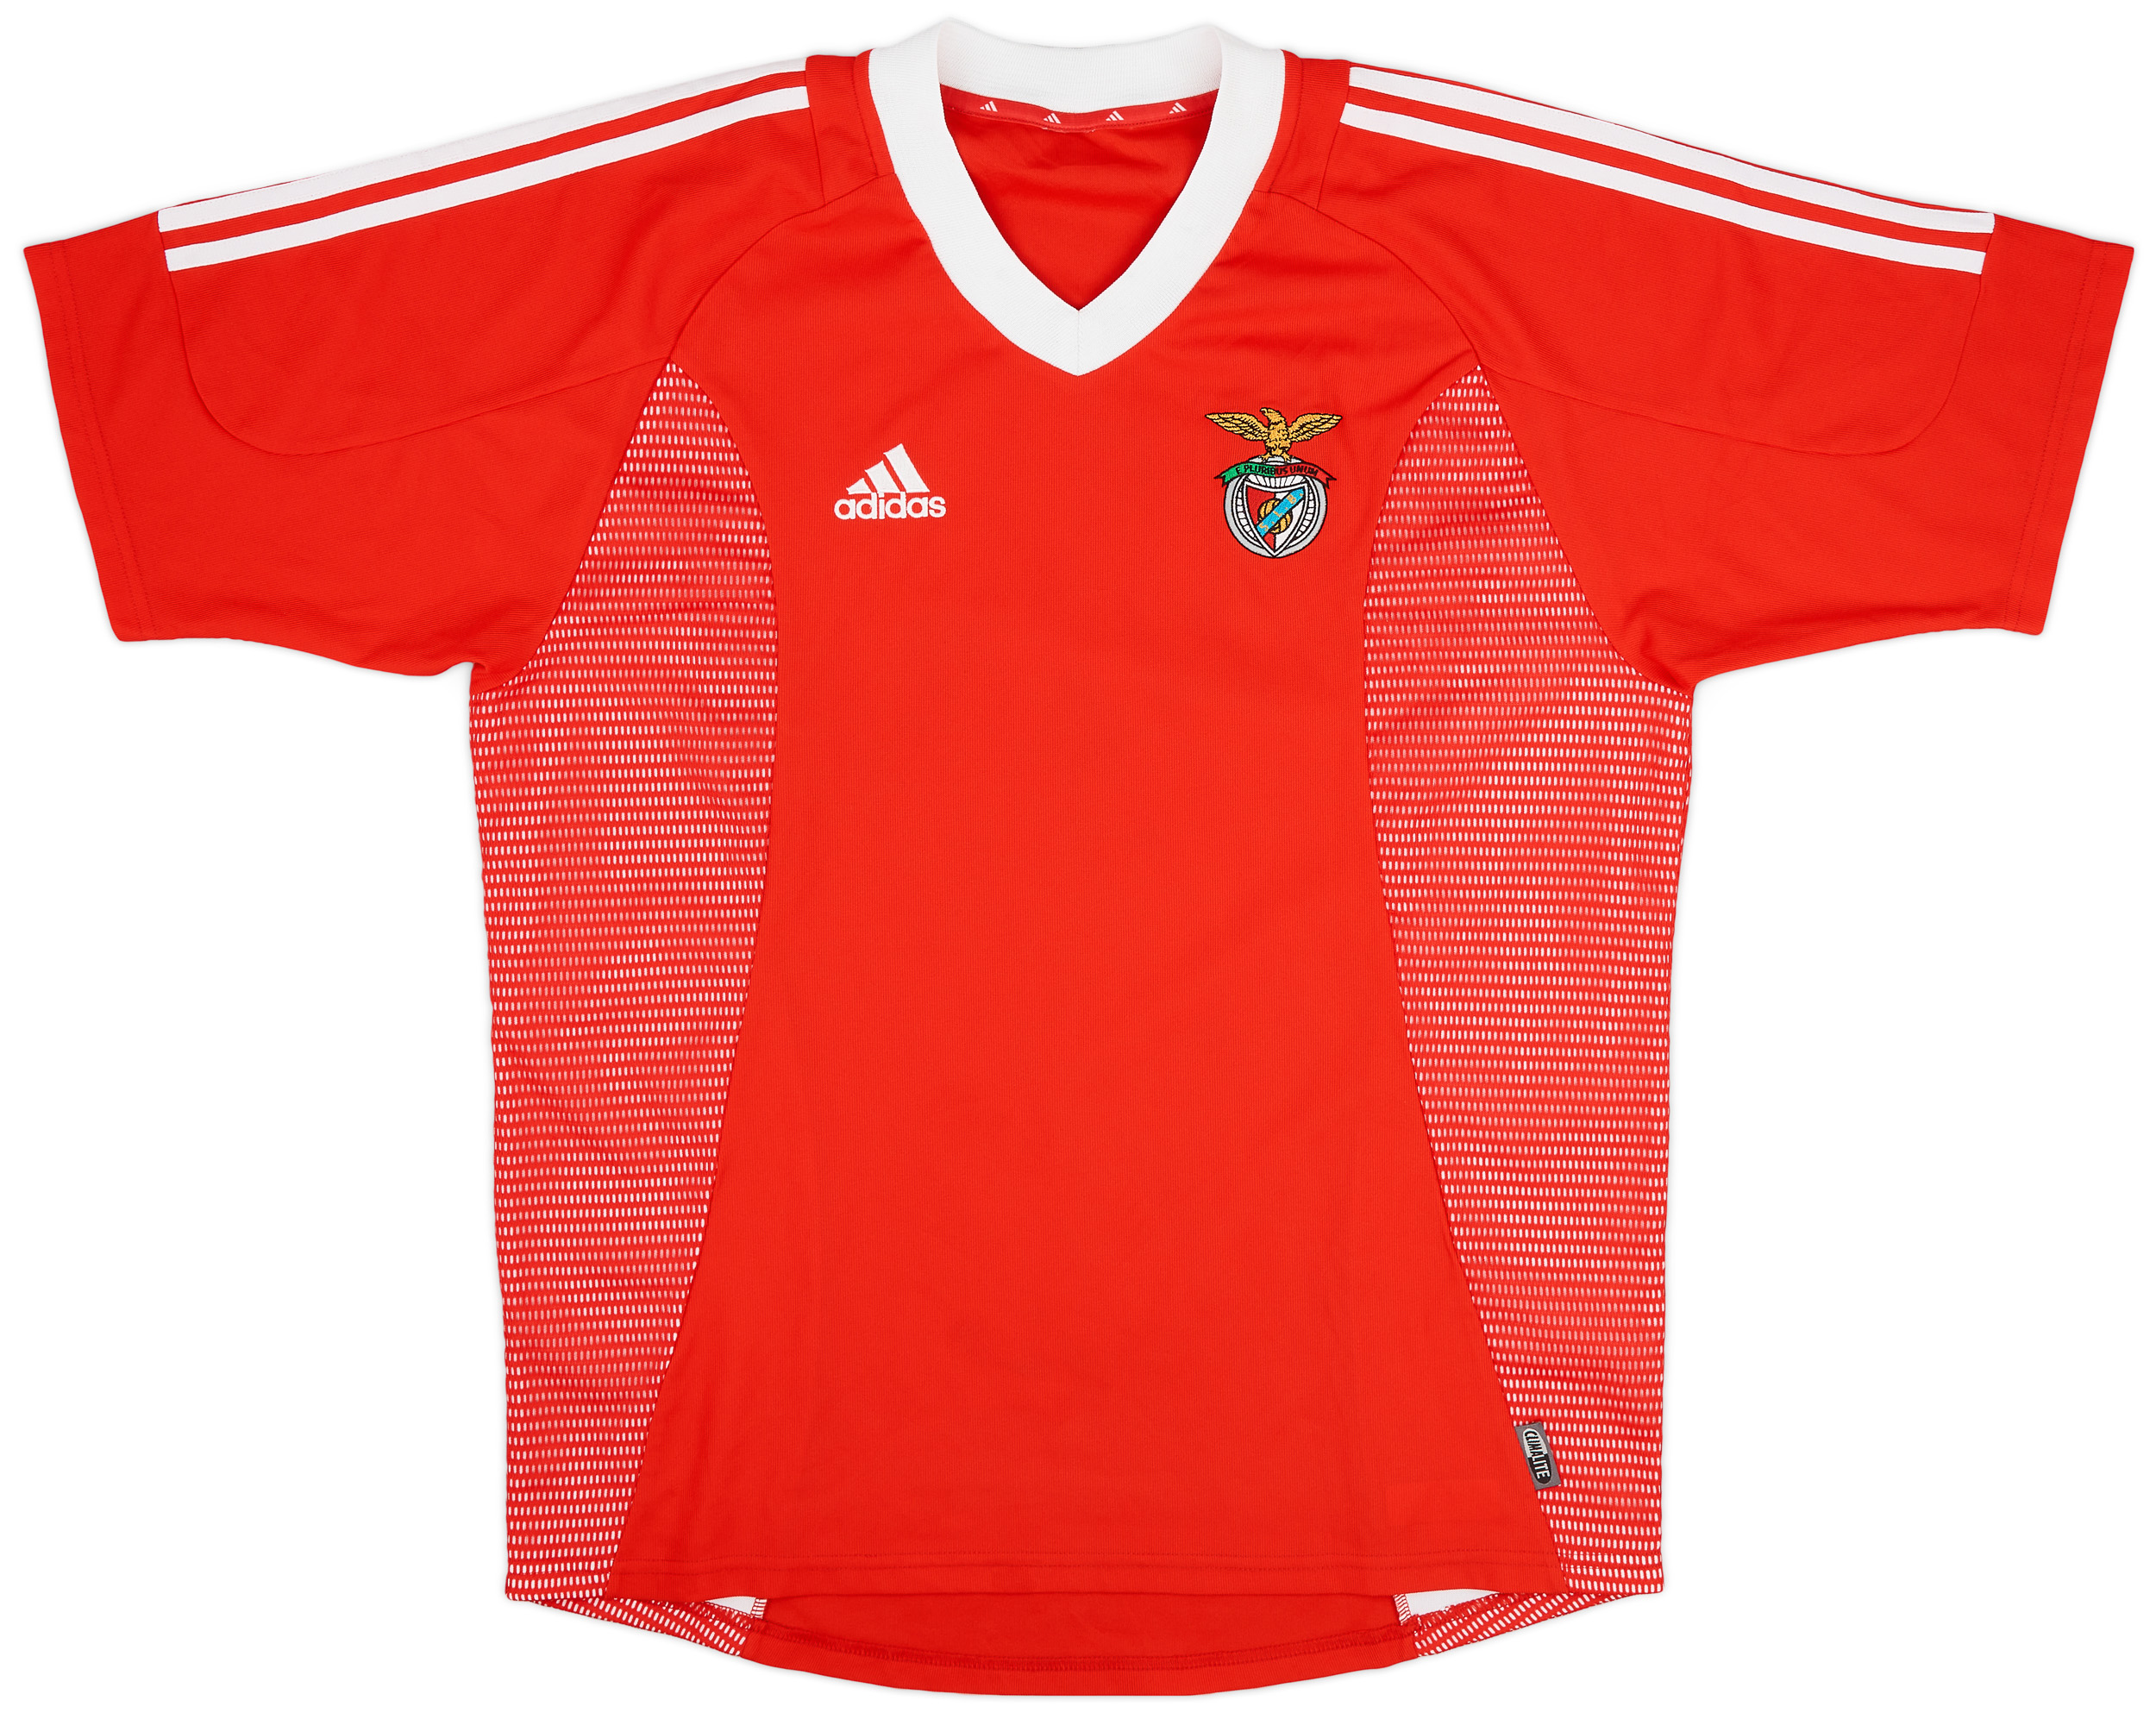 Benfica  home camisa (Original)